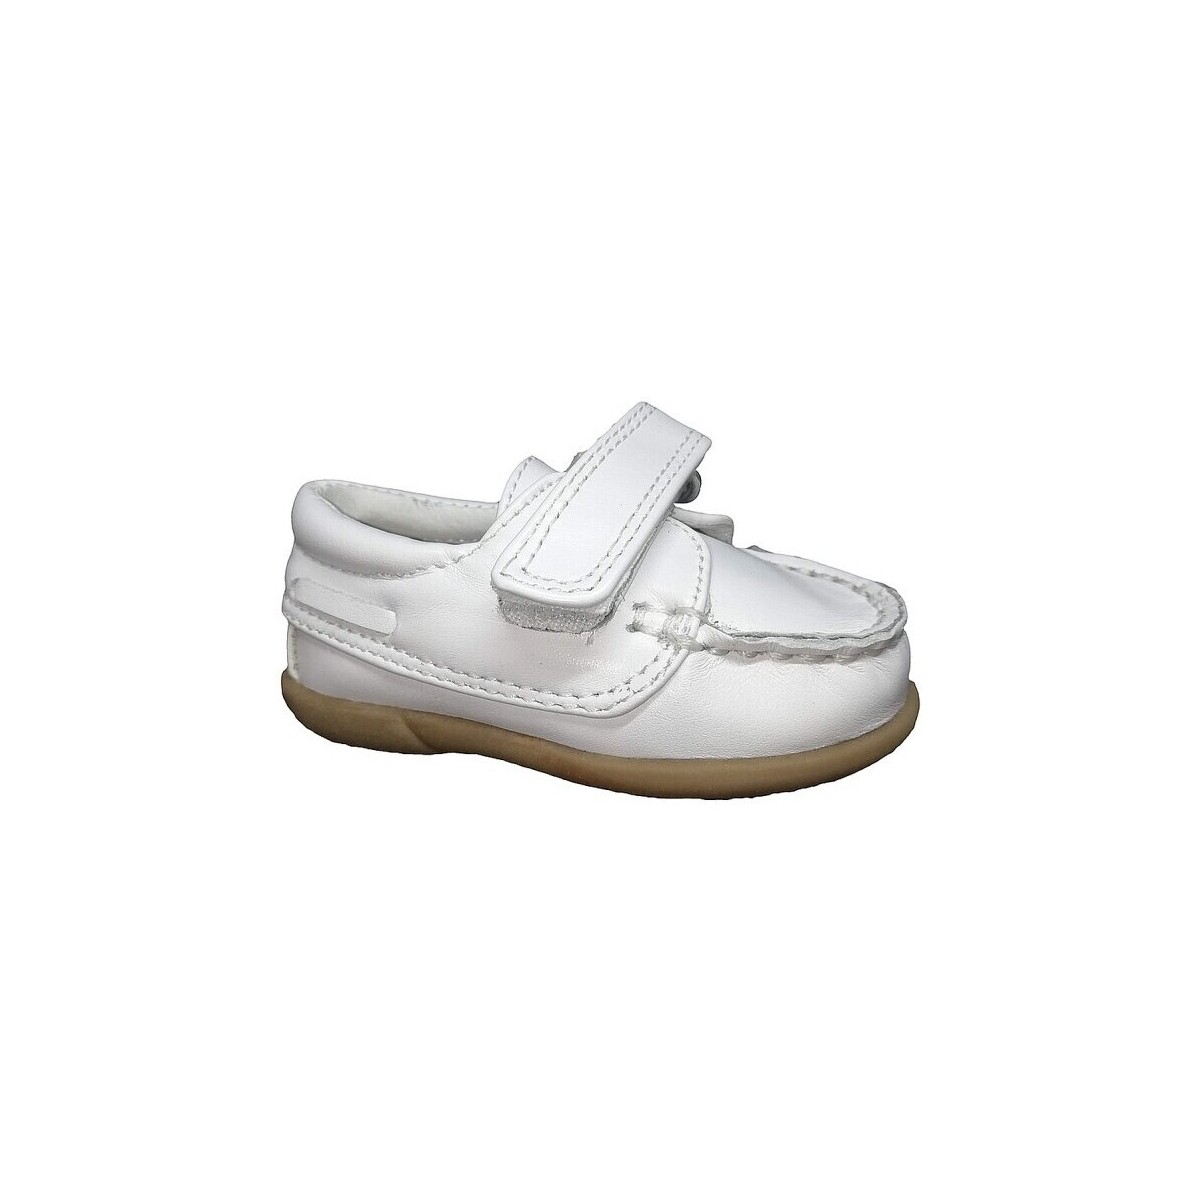 Boat shoes D’bébé 24518-18